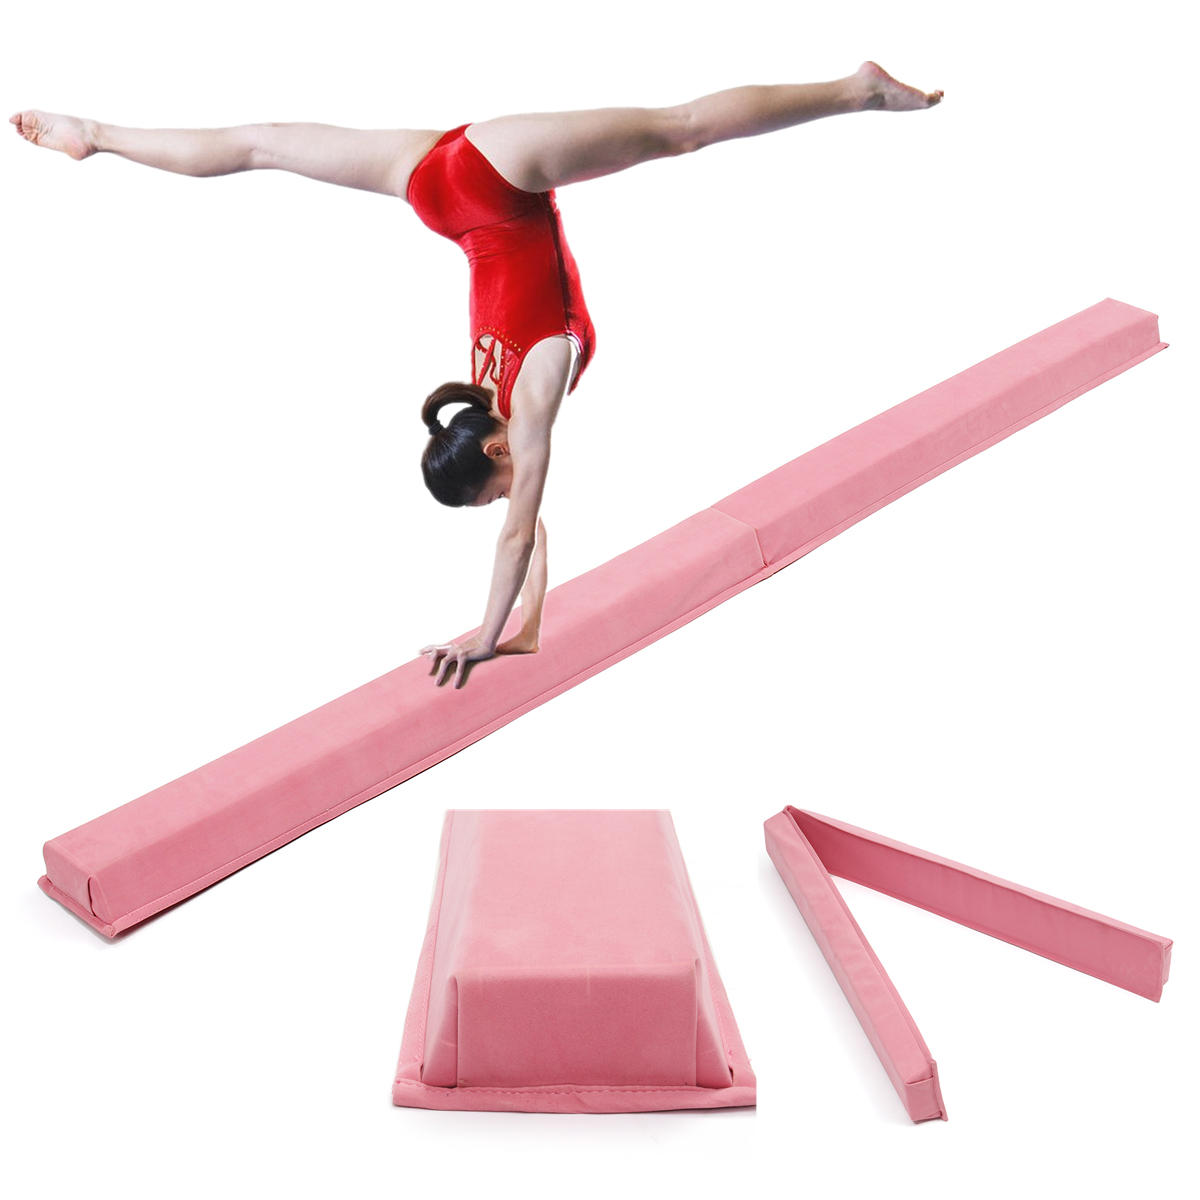 Rózsaszín professzionális tornaegyensúly matrac felnőtteknek és gyerekeknek 94,5x5,9 hüvelyk méretben készségfejlesztésre és teljesítményjavításra.